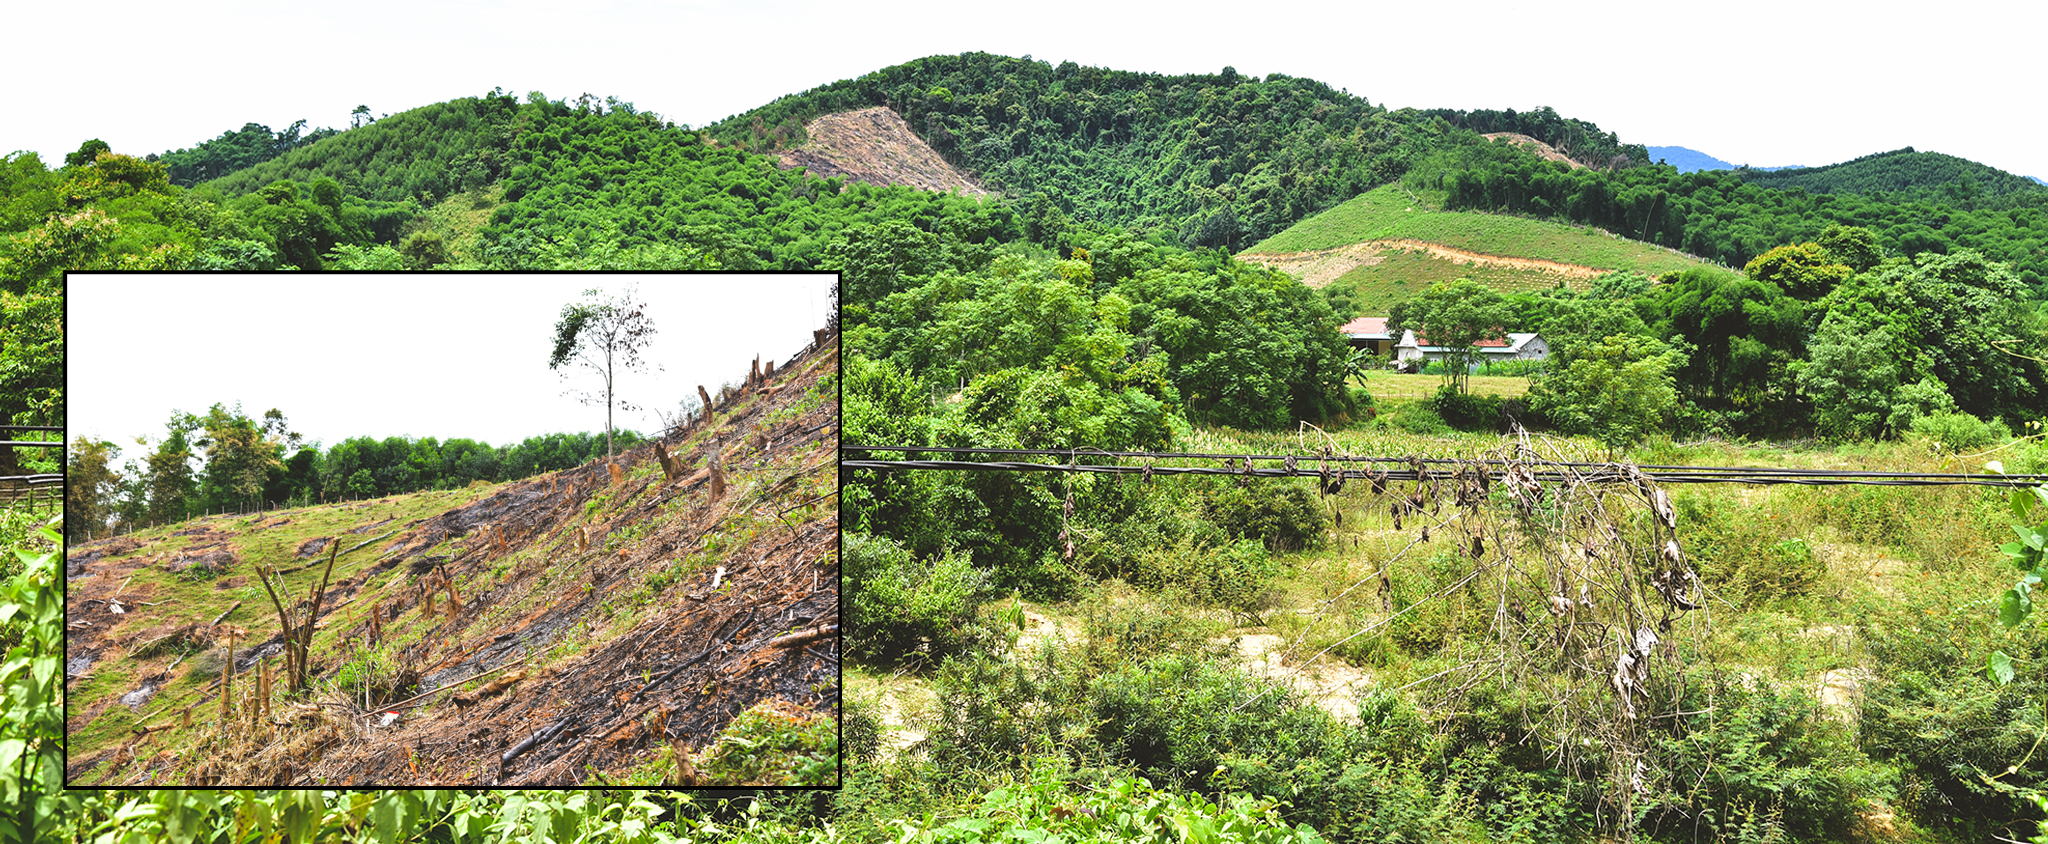 Hiện trạng rừgg cộng đồng bị chặt phá tại bản Tổng Tiến; Các khoảnh rừng tự nhiên đan xen rừng trồng của người dân ở bản Tổng Tiến, xã Đôn Phục.